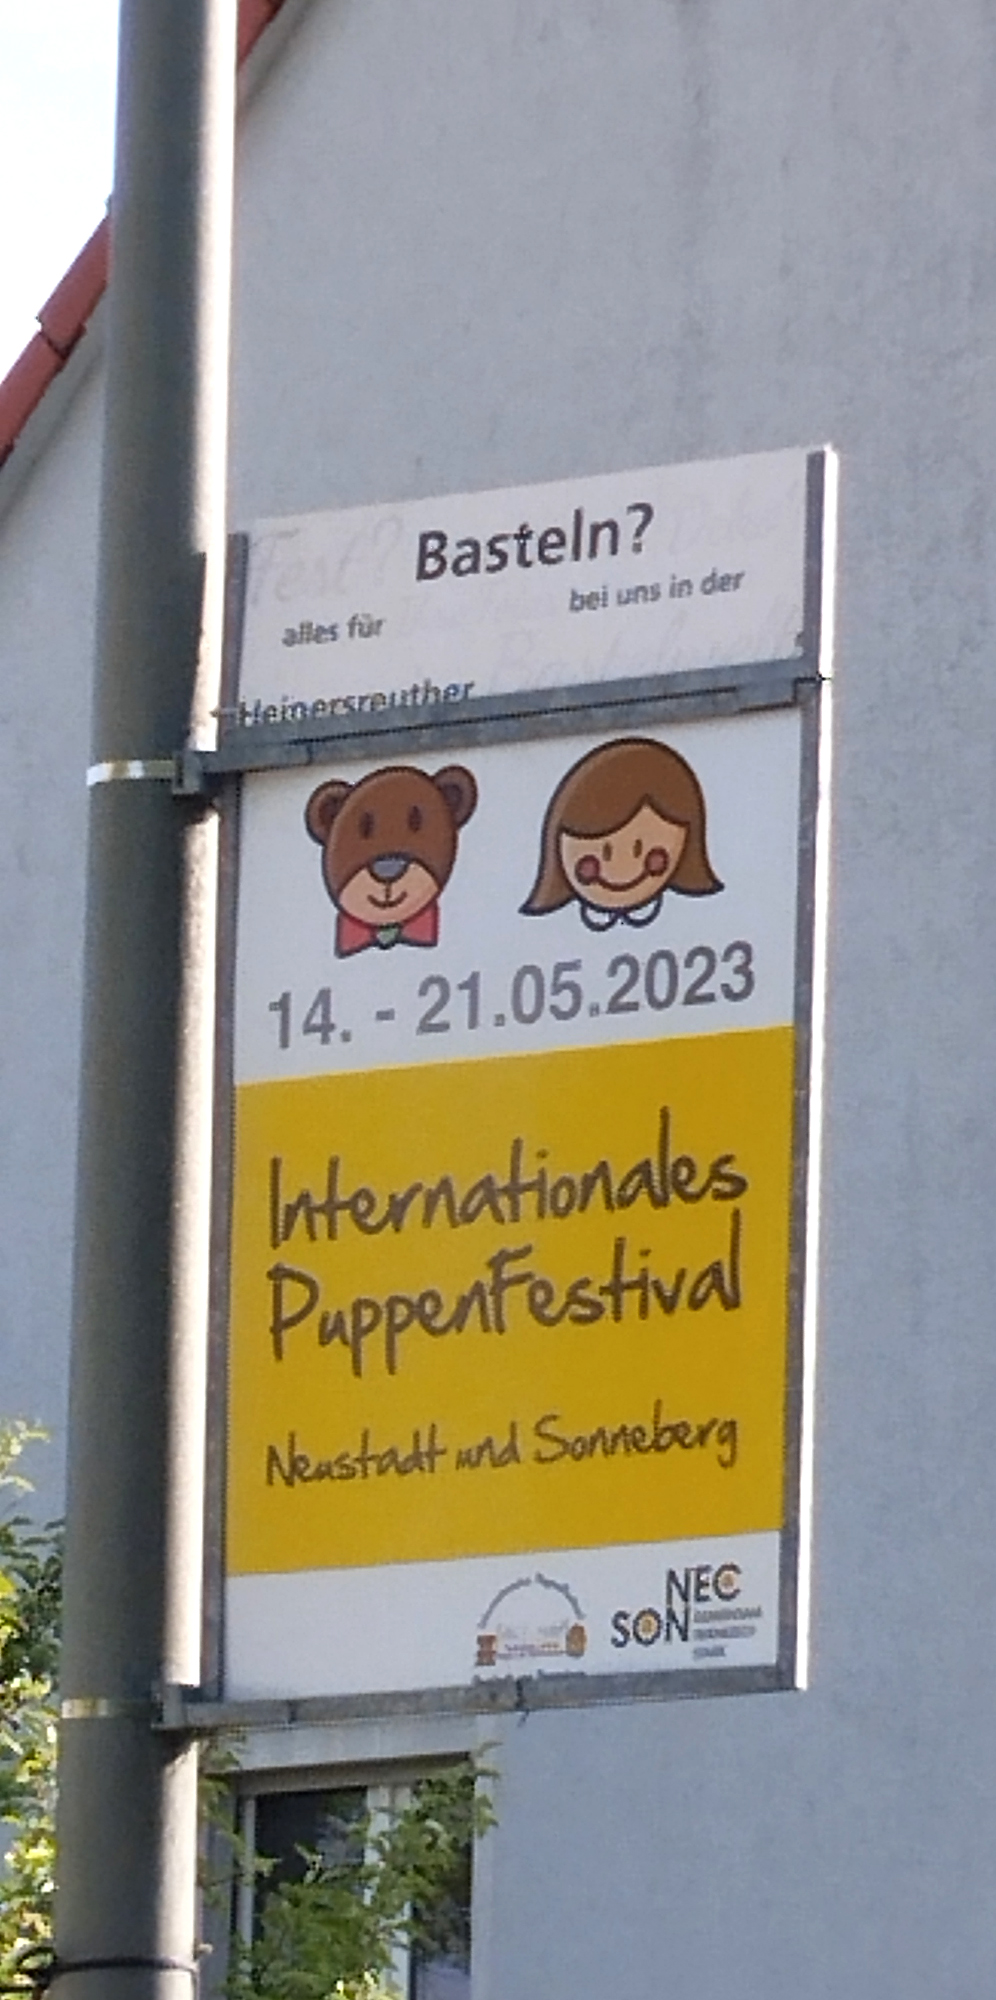 In der Nachbargemeinde von Bayreuth - Hummeltal wurde am Laternenmast auch Werbung für das Internationale PuppenFestival in Neustadt und Sonneberg gemacht. 